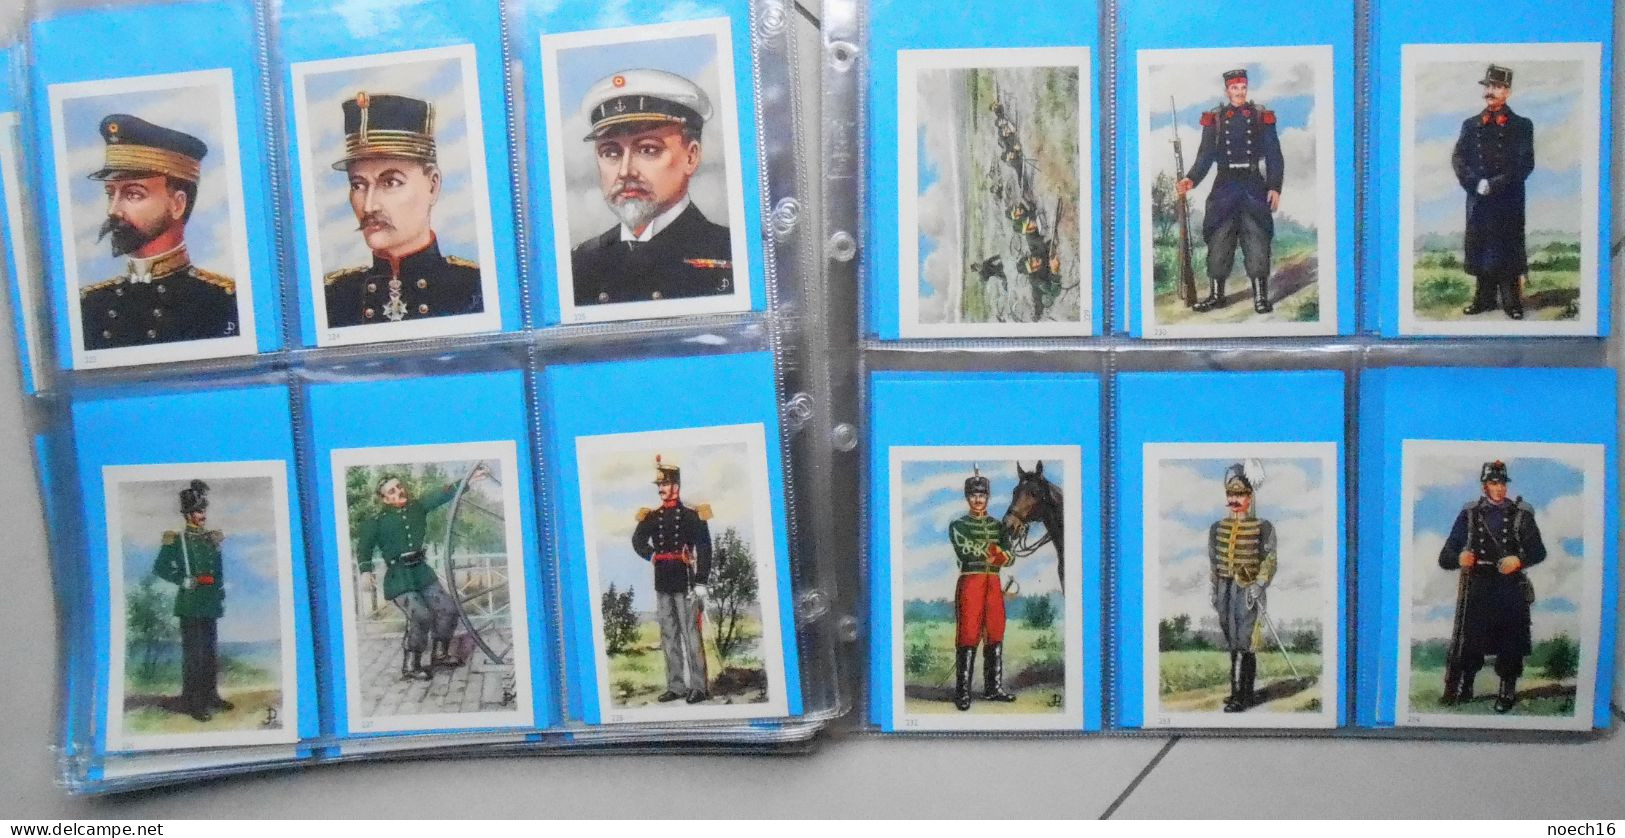 Collection complète 290 Chromos, Images. Ri- Ri Demaret. Histoire militaire de Belgique